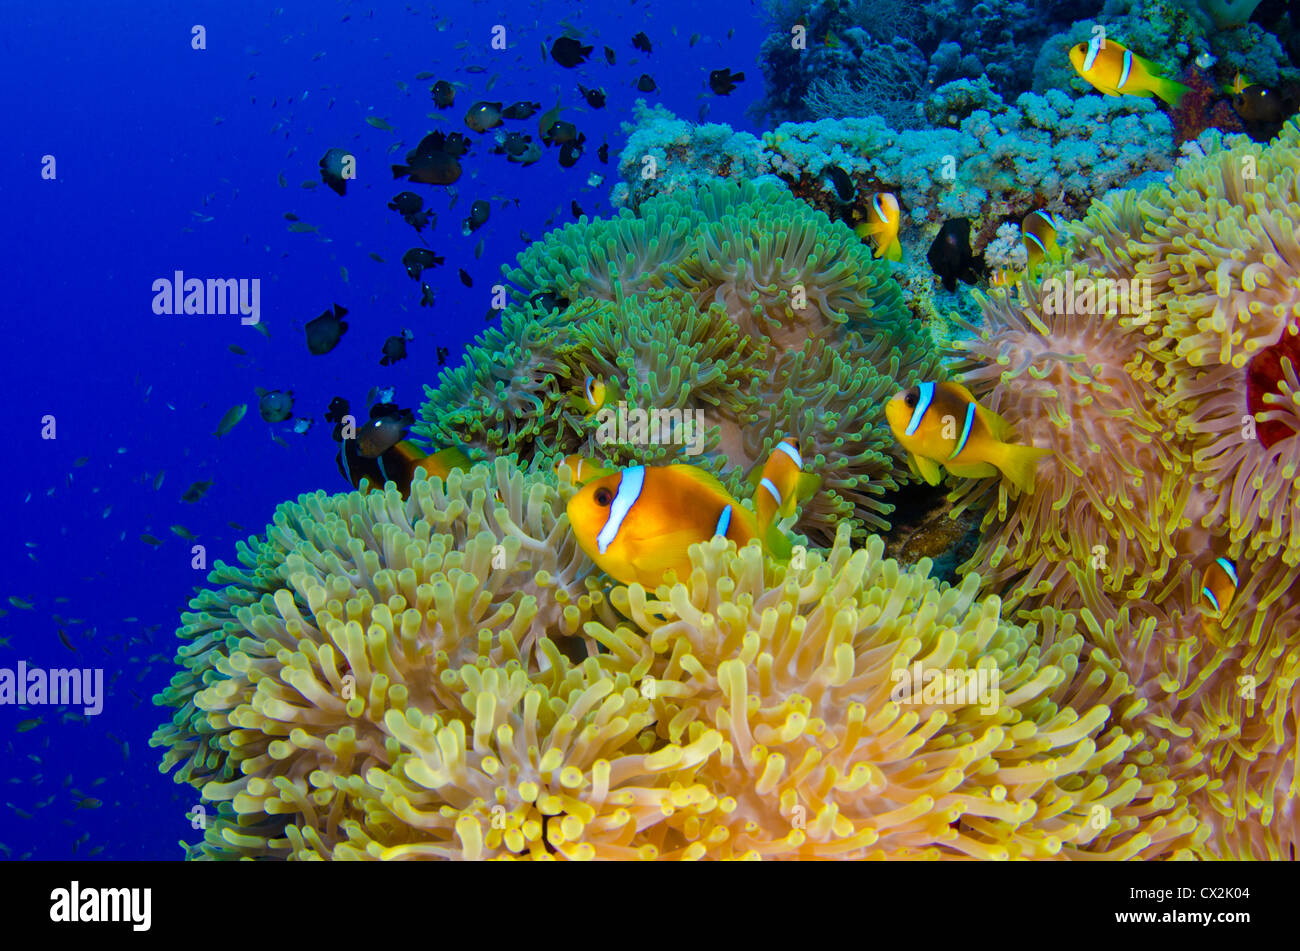 Mar Rosso, subacquea, Coral Reef, la vita del mare e della vita marina, oceano, scuba diving, vacanza, acqua, pesce, anemone, pesce di anemone, colore Foto Stock